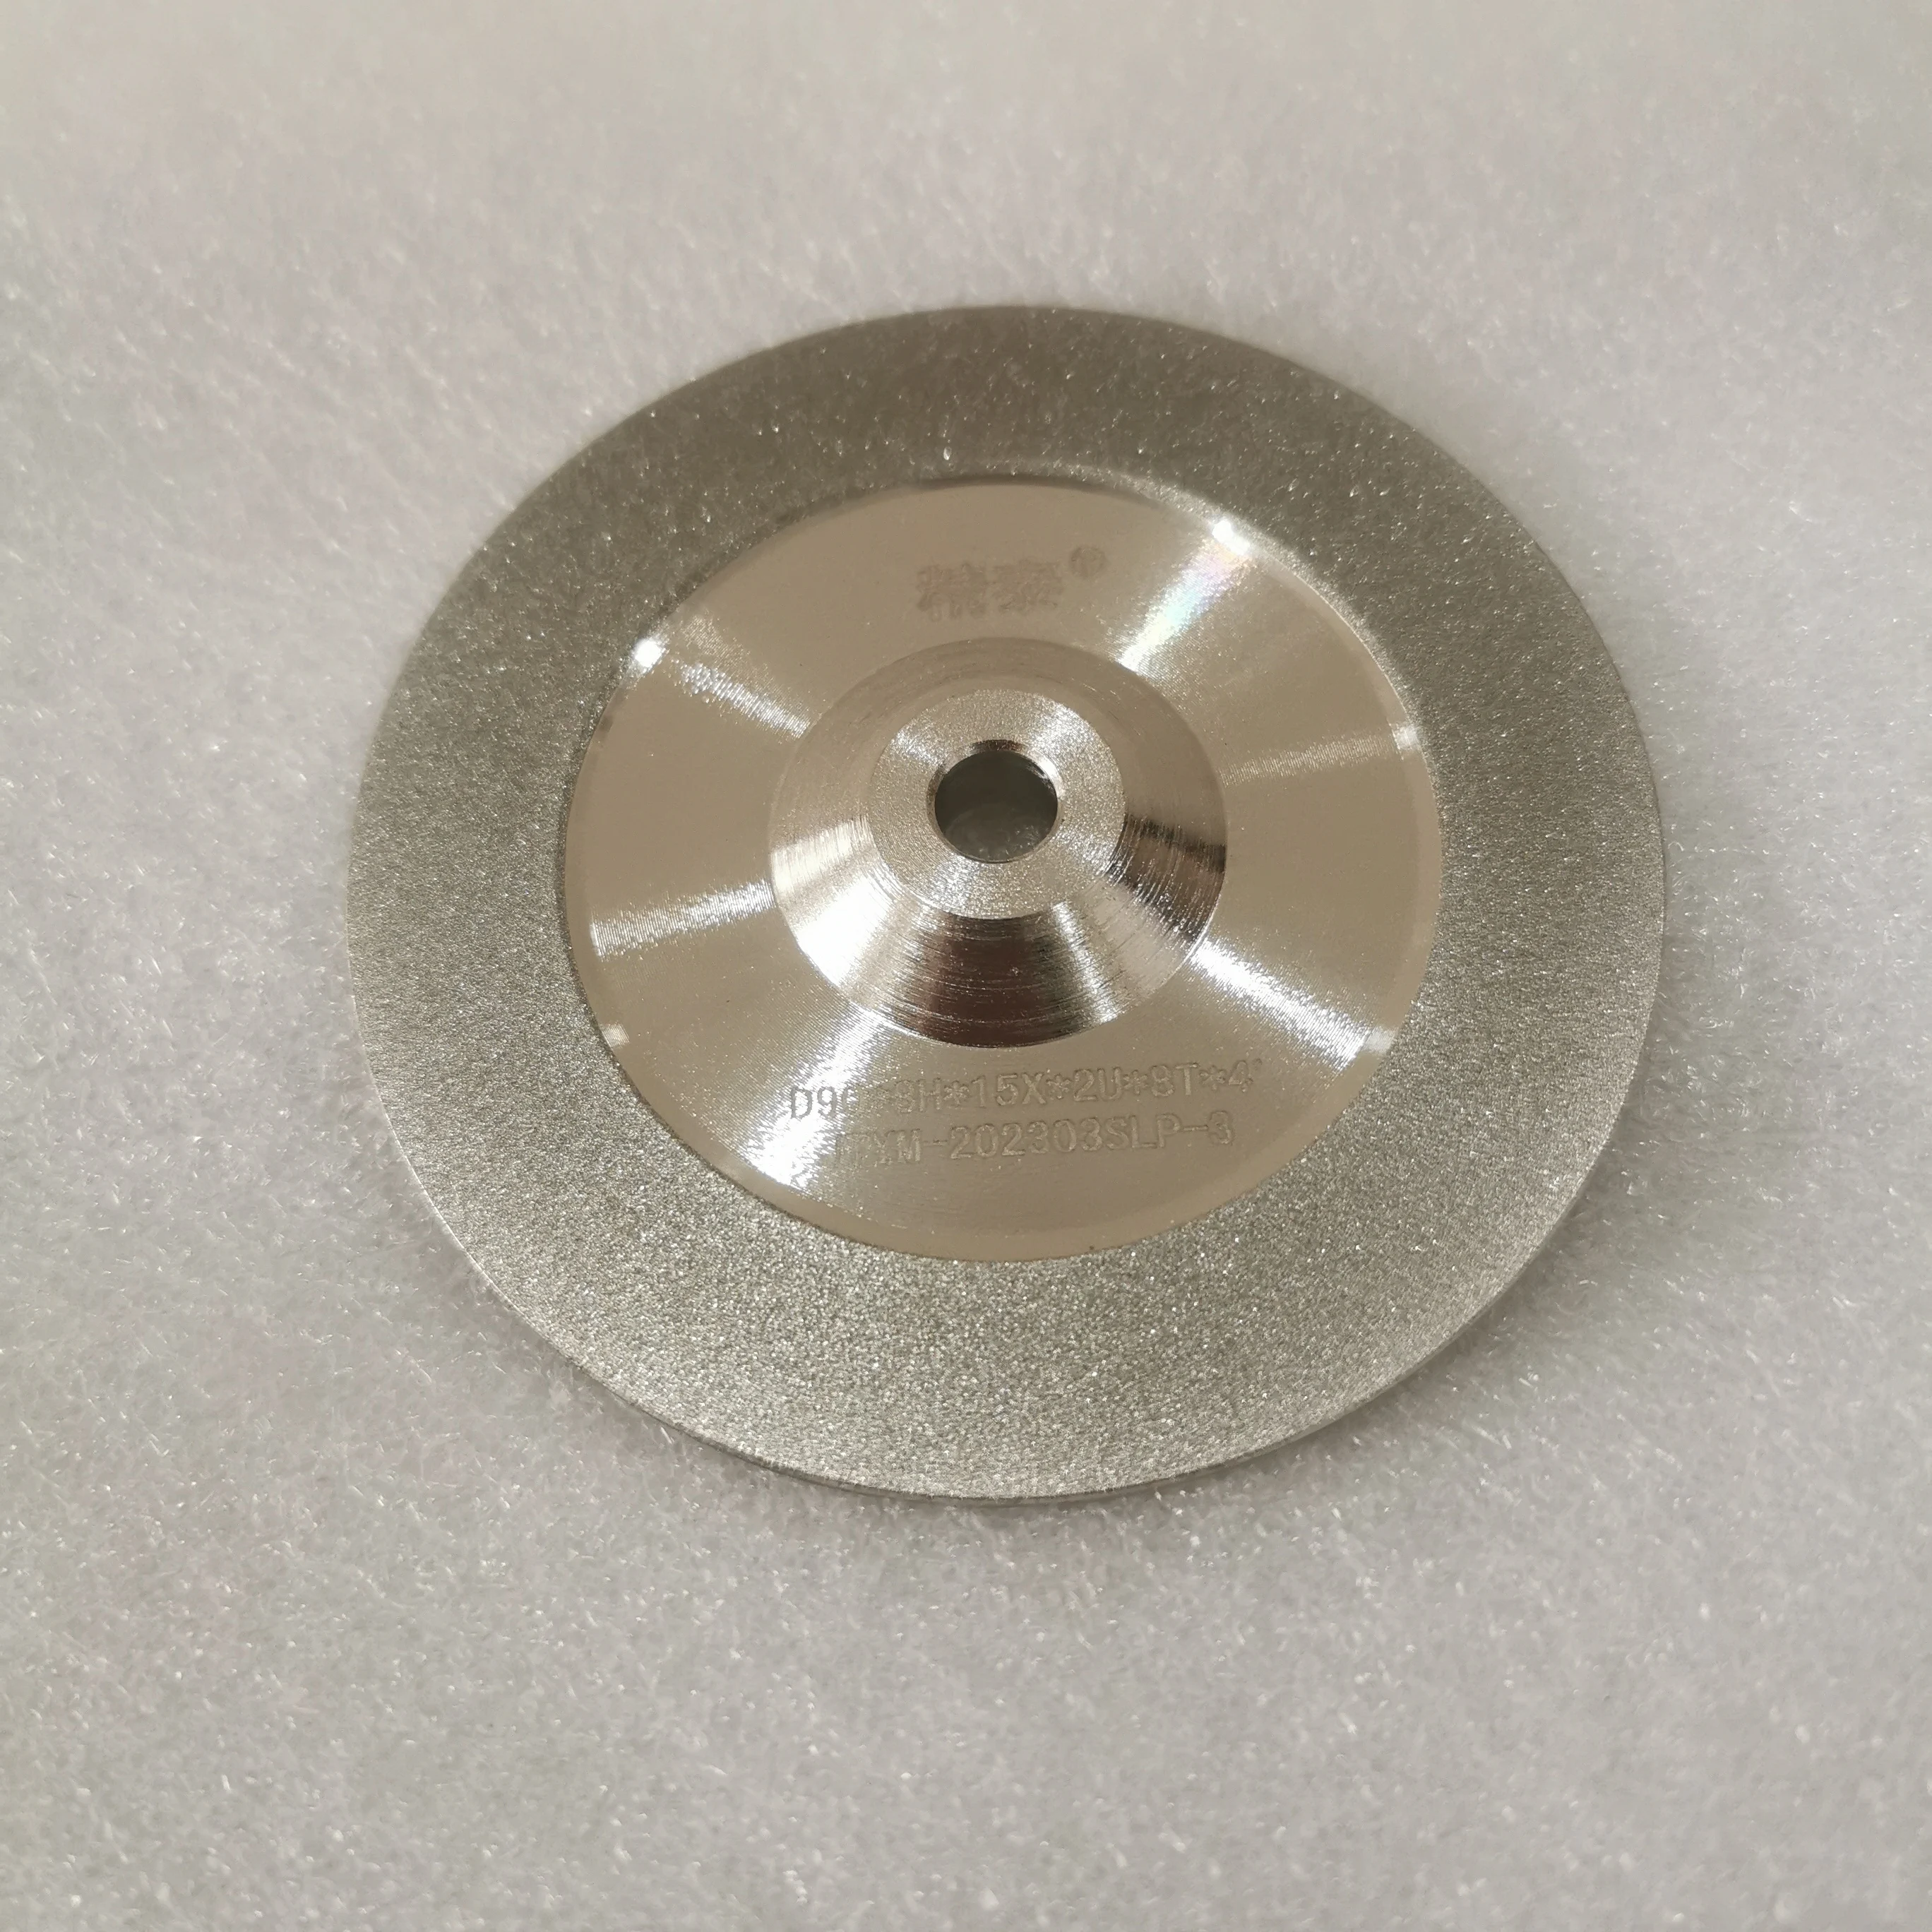 Grinding wheel for TIG Welder Tungsten Electrode Sharpener Grinder